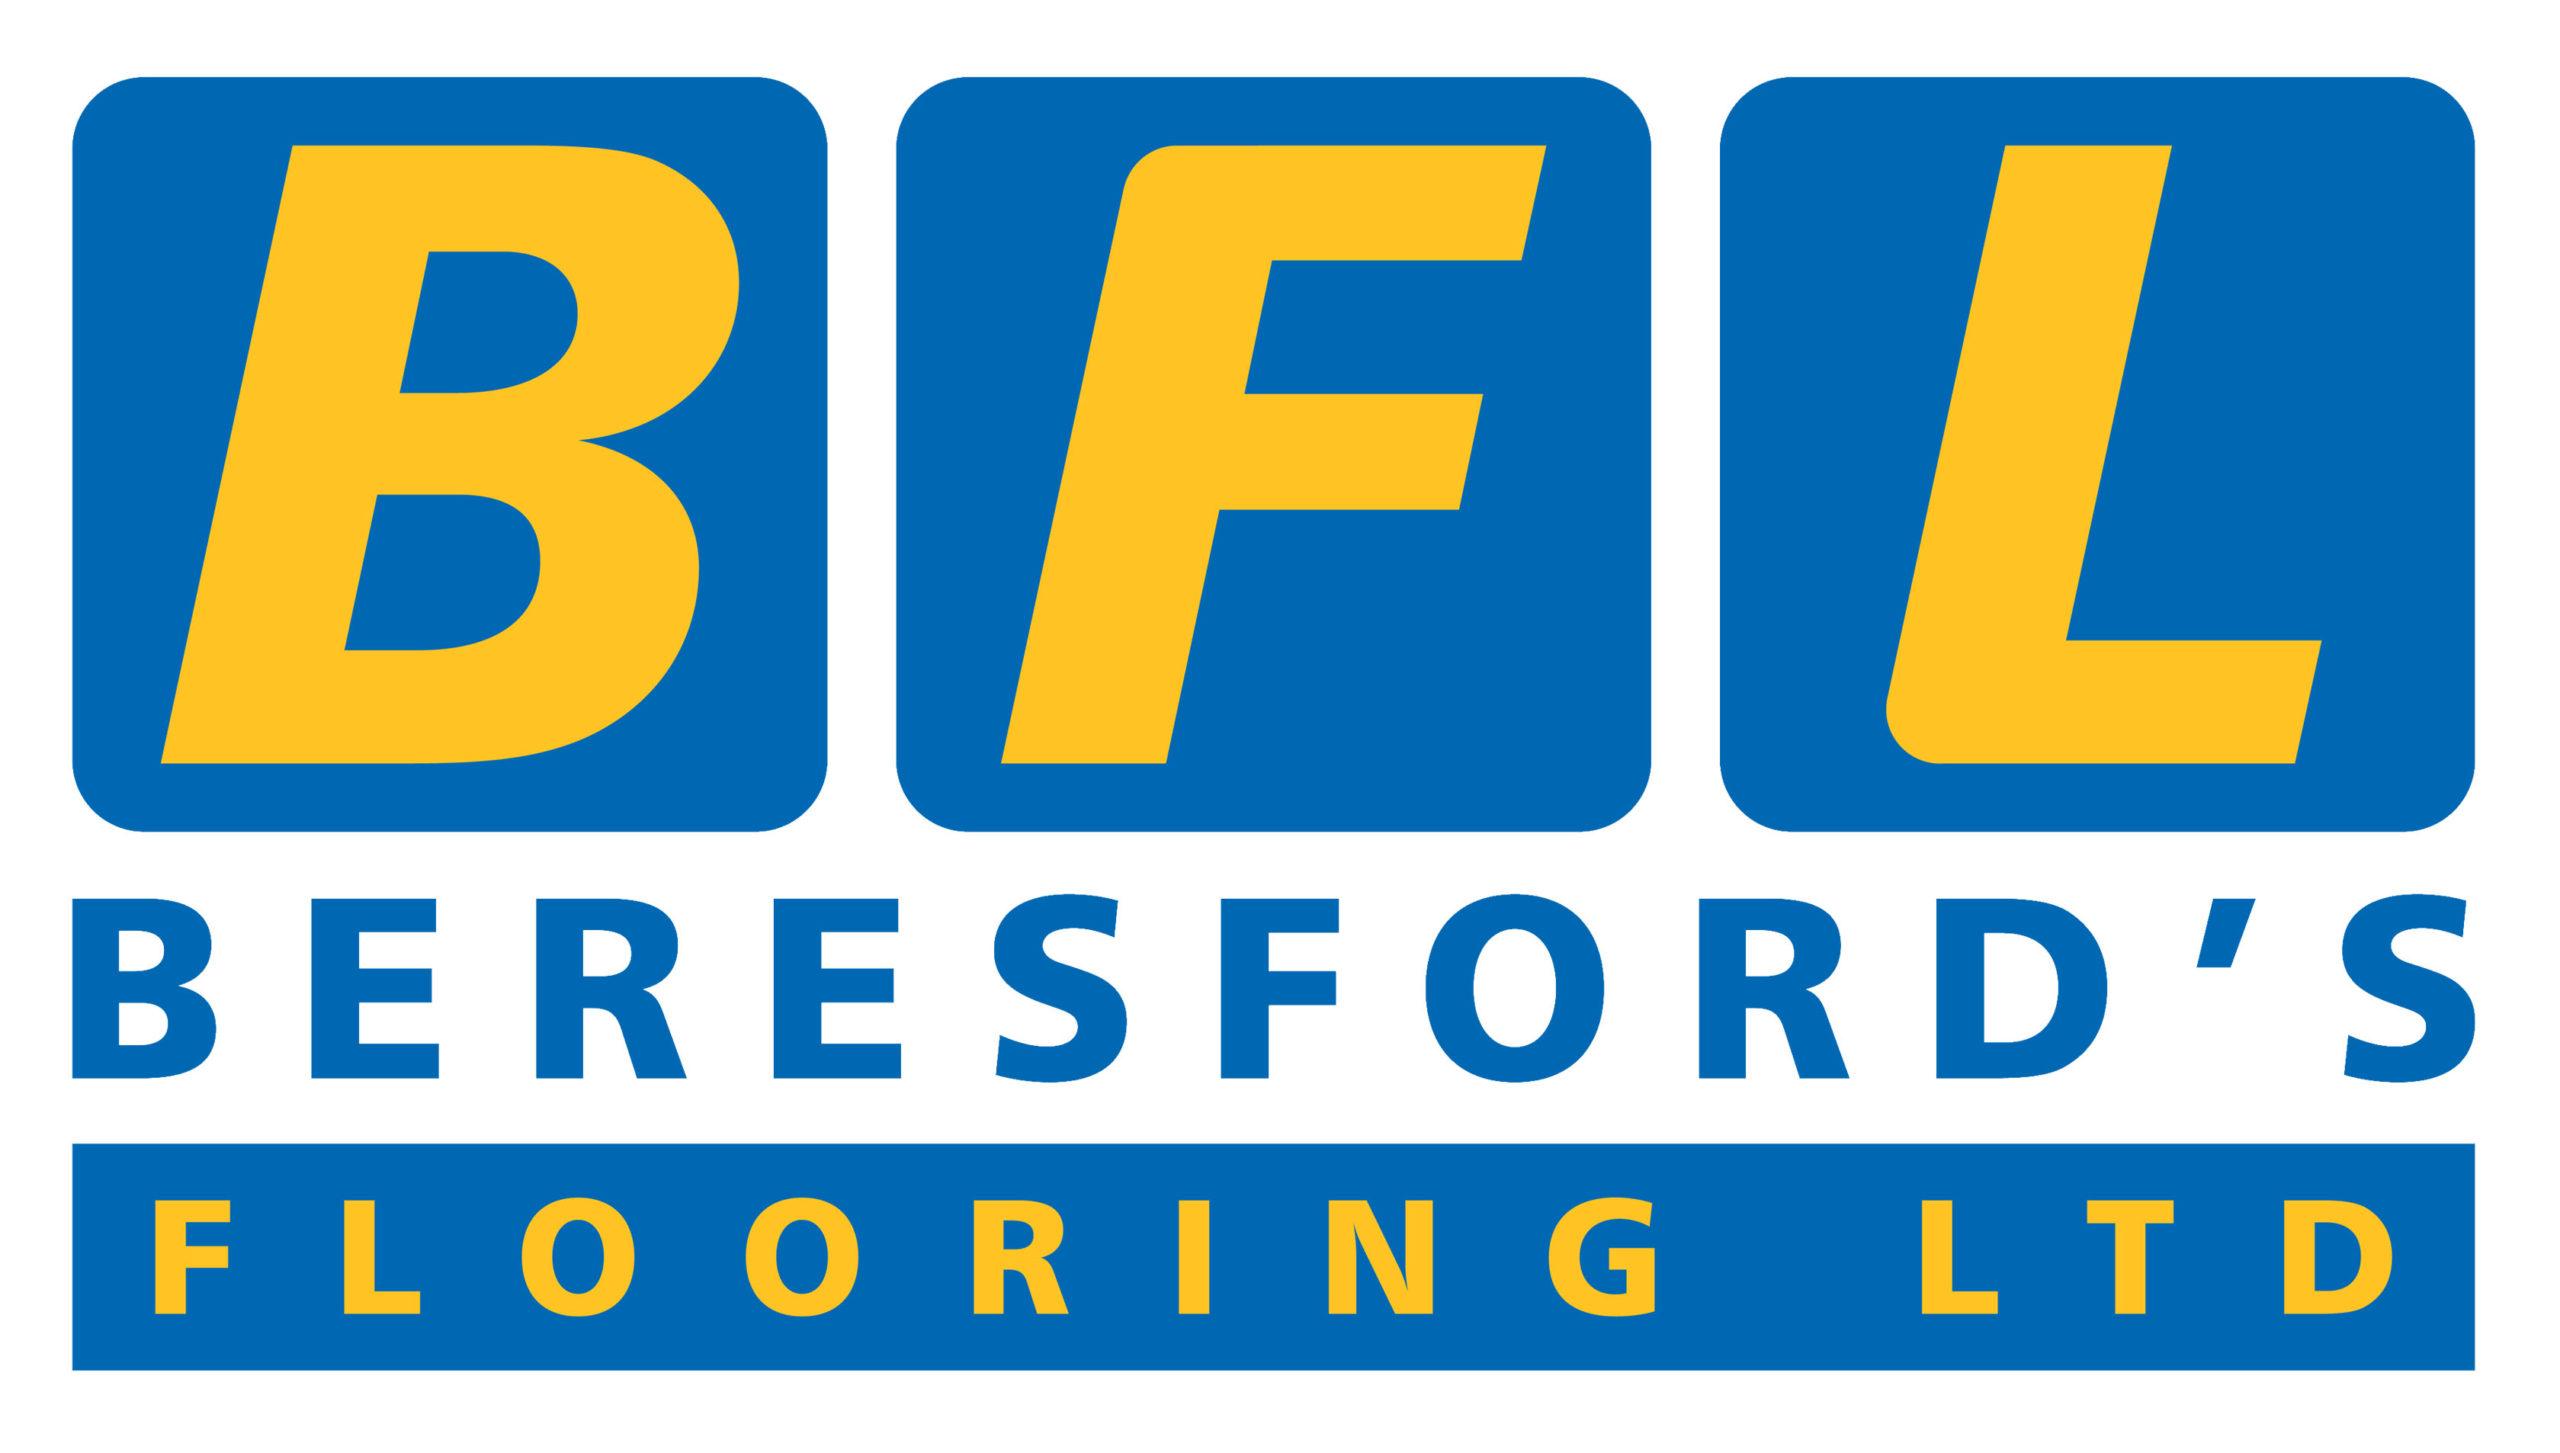 Beresford’s Flooring Ltd